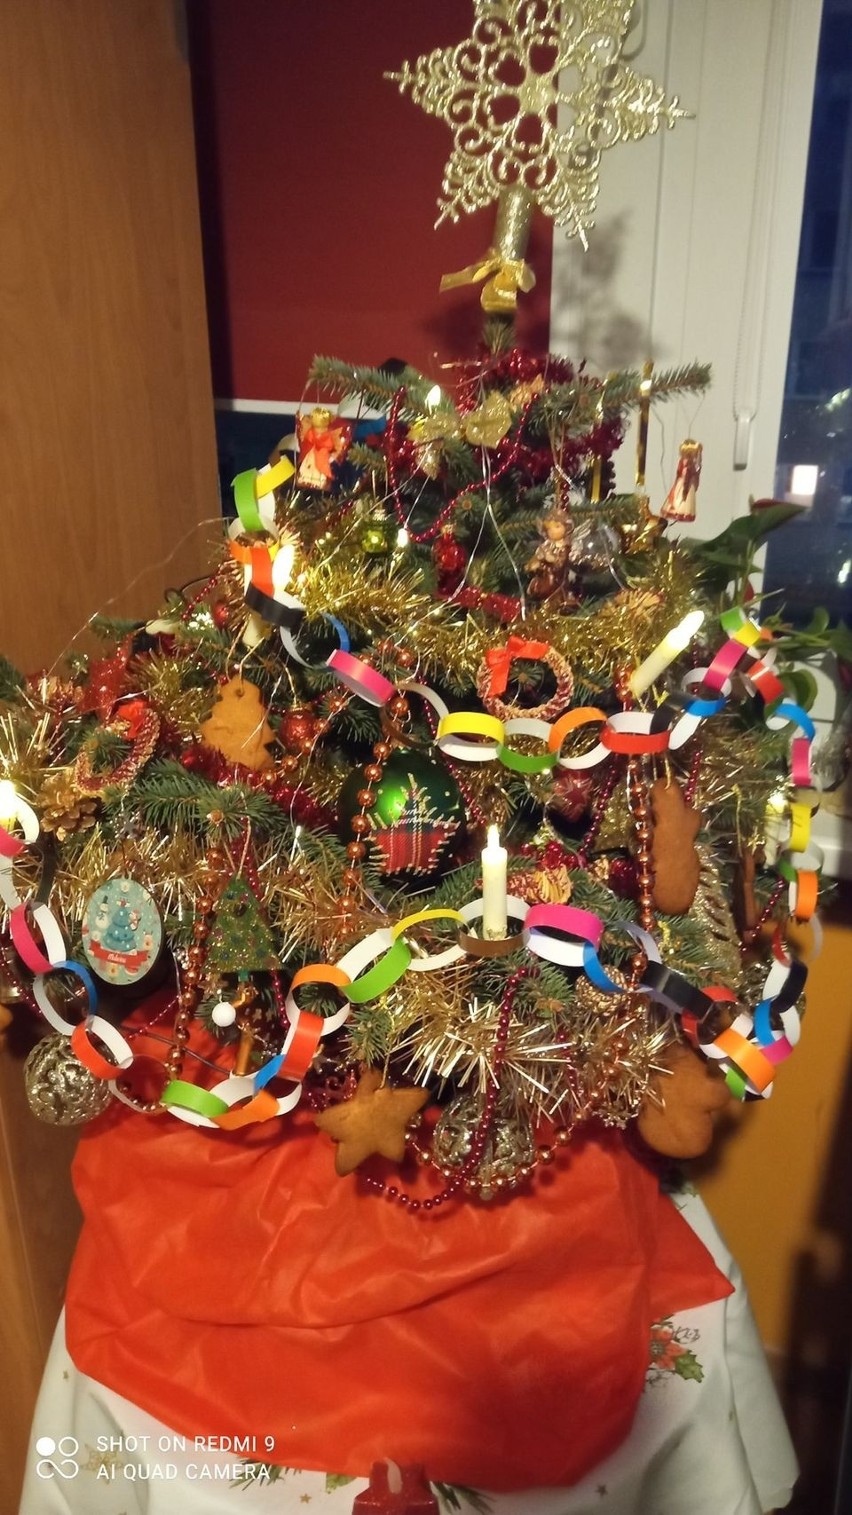 Choinki w domach Czytelników "Dziennika Bałtyckiego". Zobaczcie wyjątkowe zdjęcia świątecznych drzewek! 